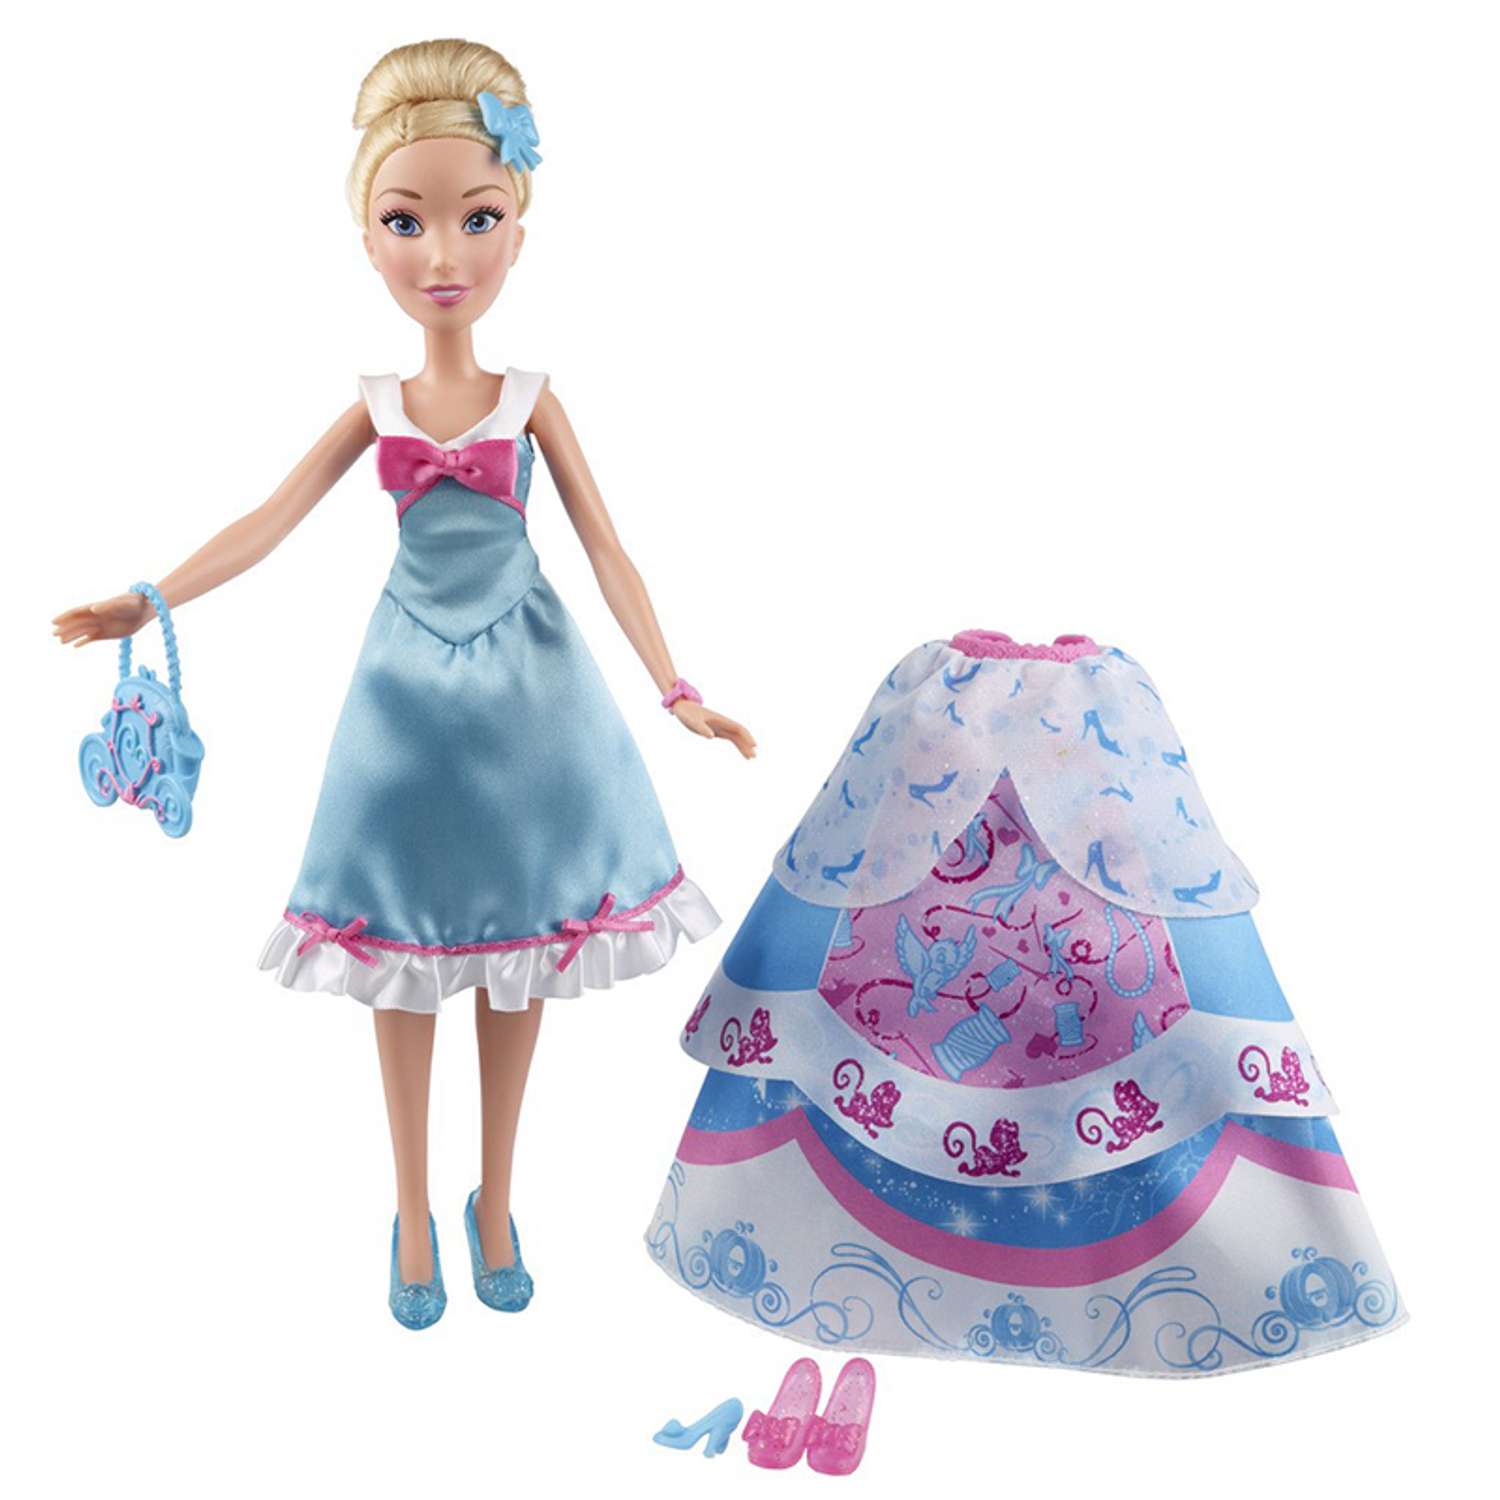 Кукла Princess Princess Hasbro Принцесса в платье в ассортименте B5312EU4 B5312EU4 - фото 1